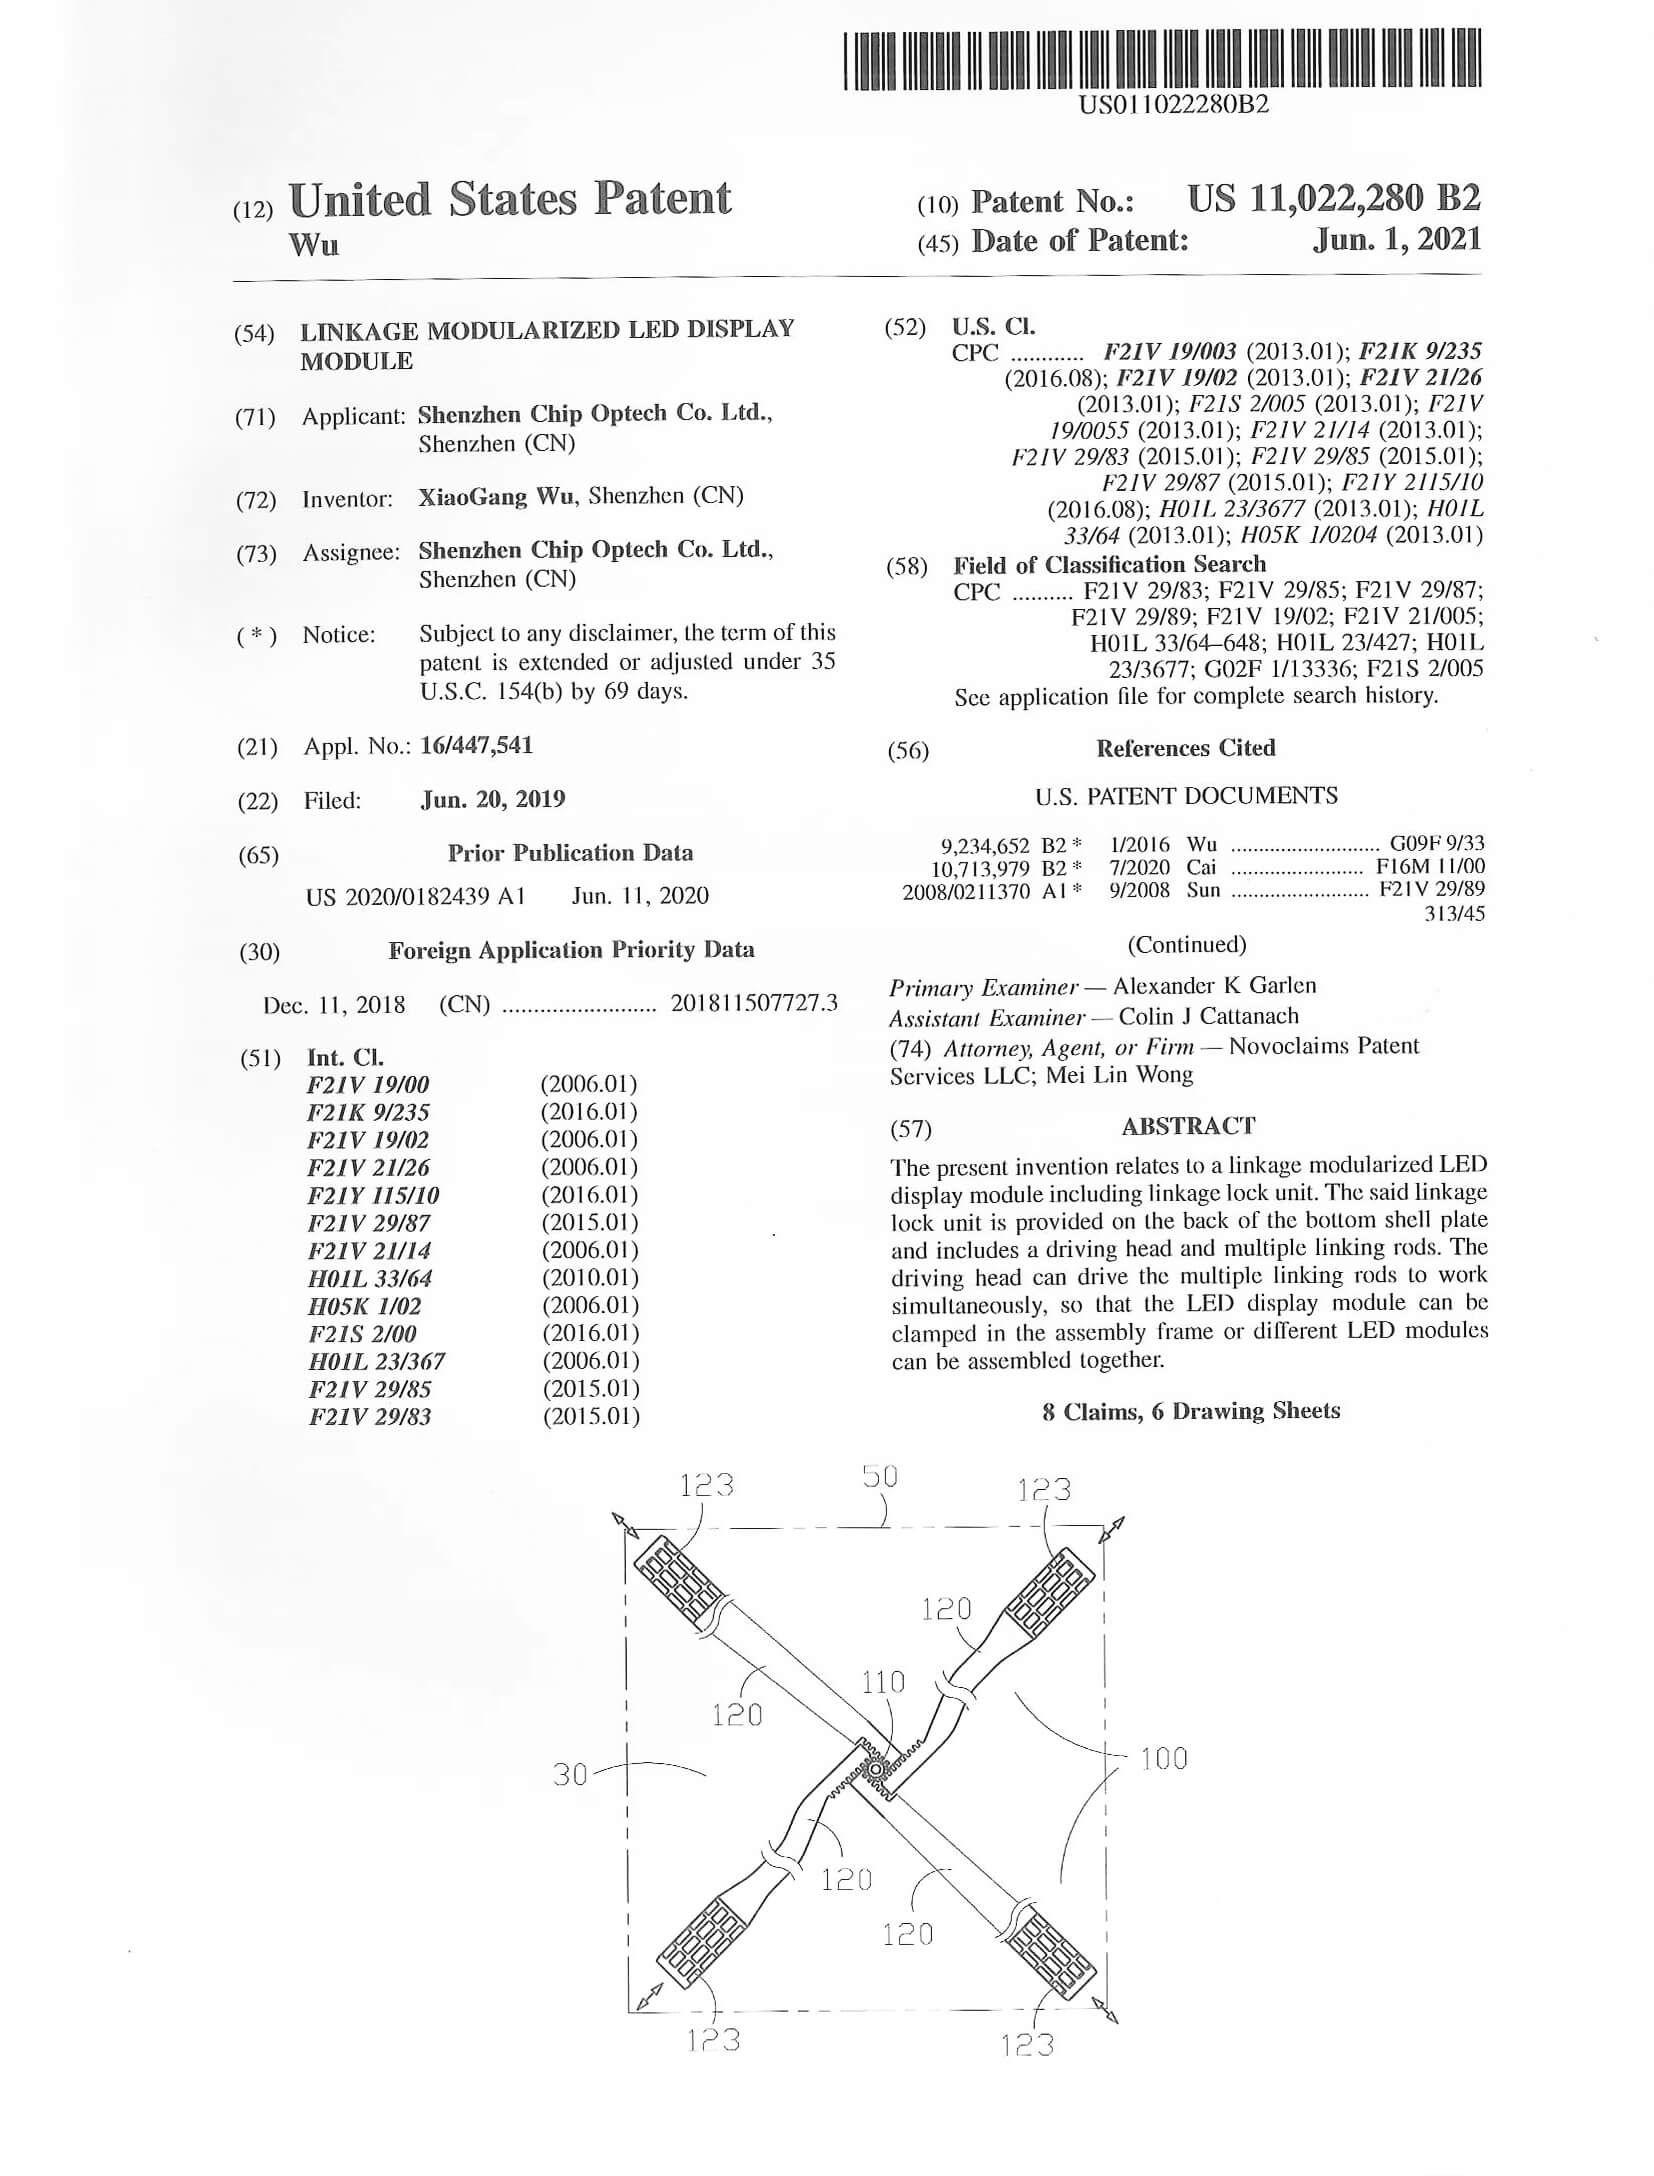 United States Patent (Linkage modularized LED display module)